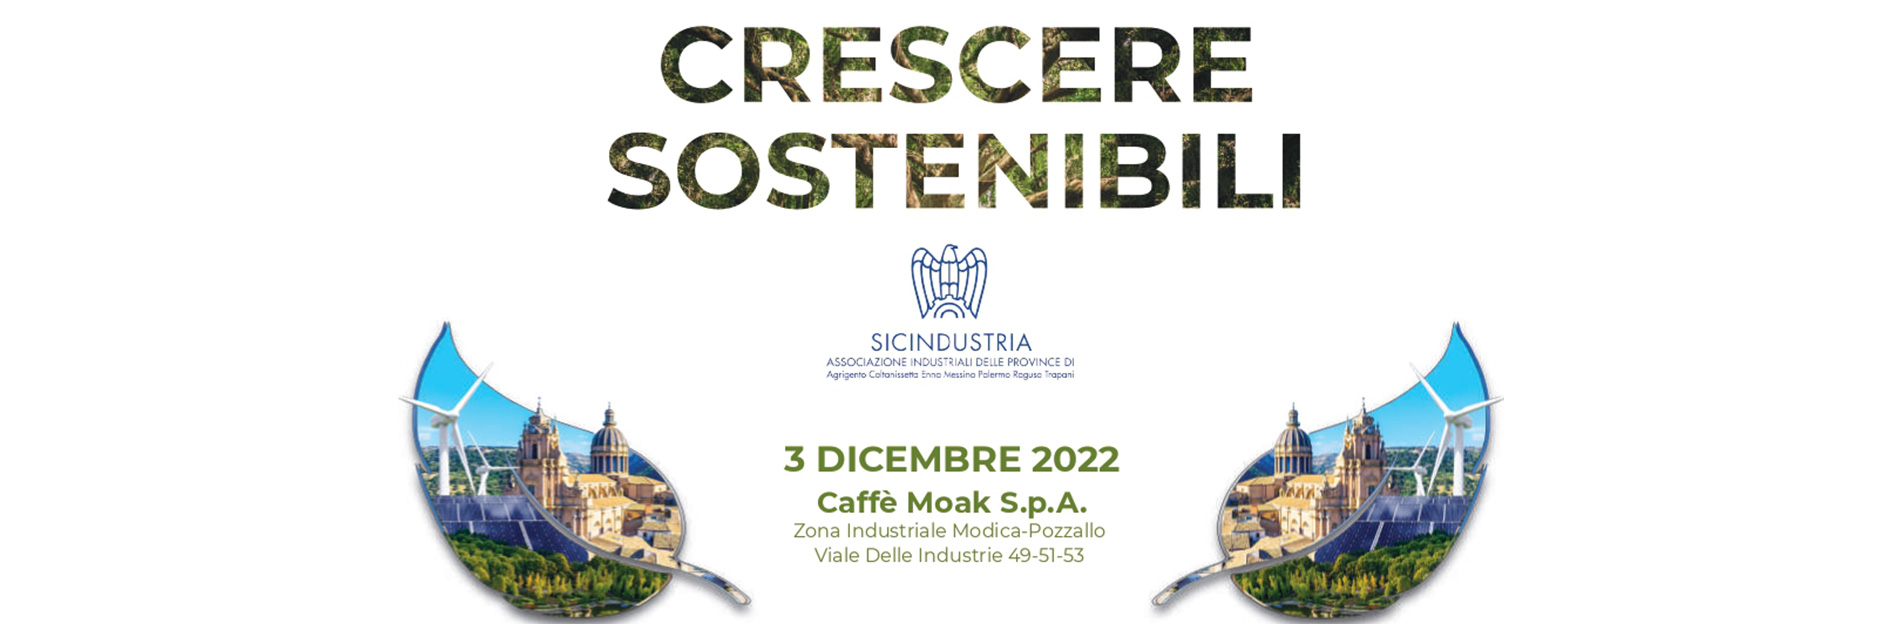 Sicindustria - Crescere Sostenibili: 3 dicembre 2022